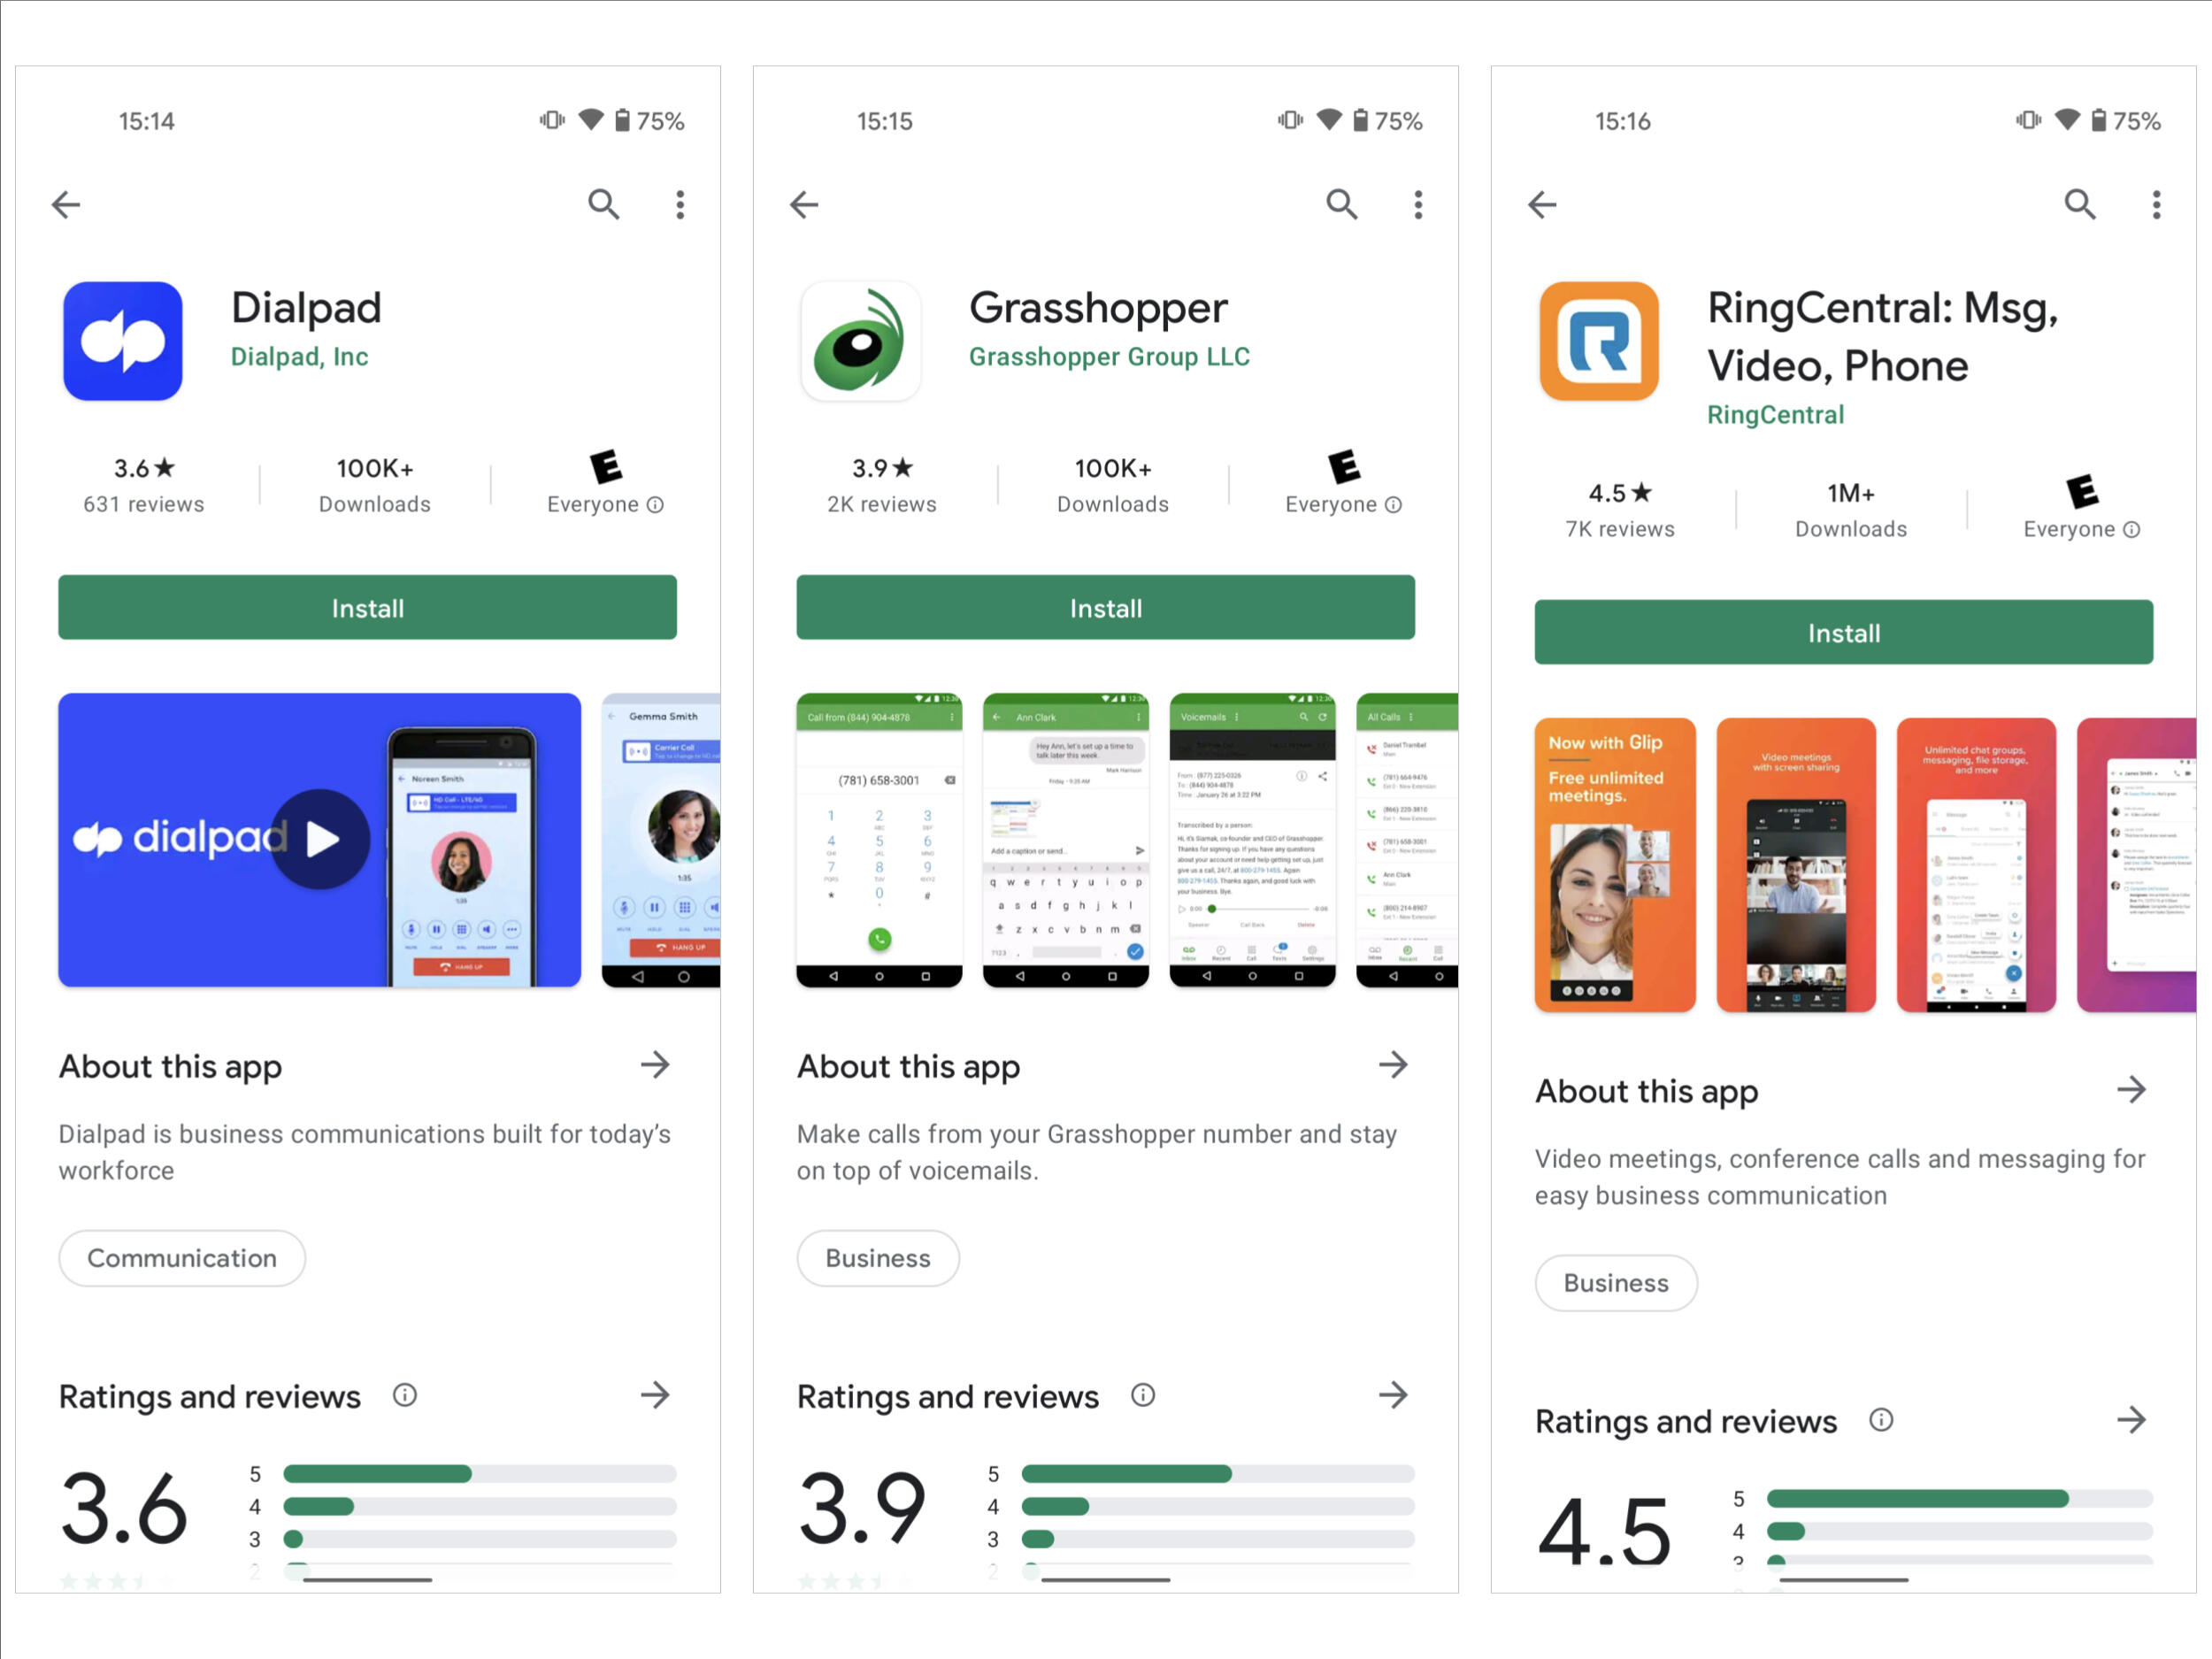 Dialpad (solda), Grasshopper (ortada) ve RingCentral için Google Play mağazasından Android uygulama sayfasının ekran görüntüsü: Mesaj, Video, Telefon (sağda).